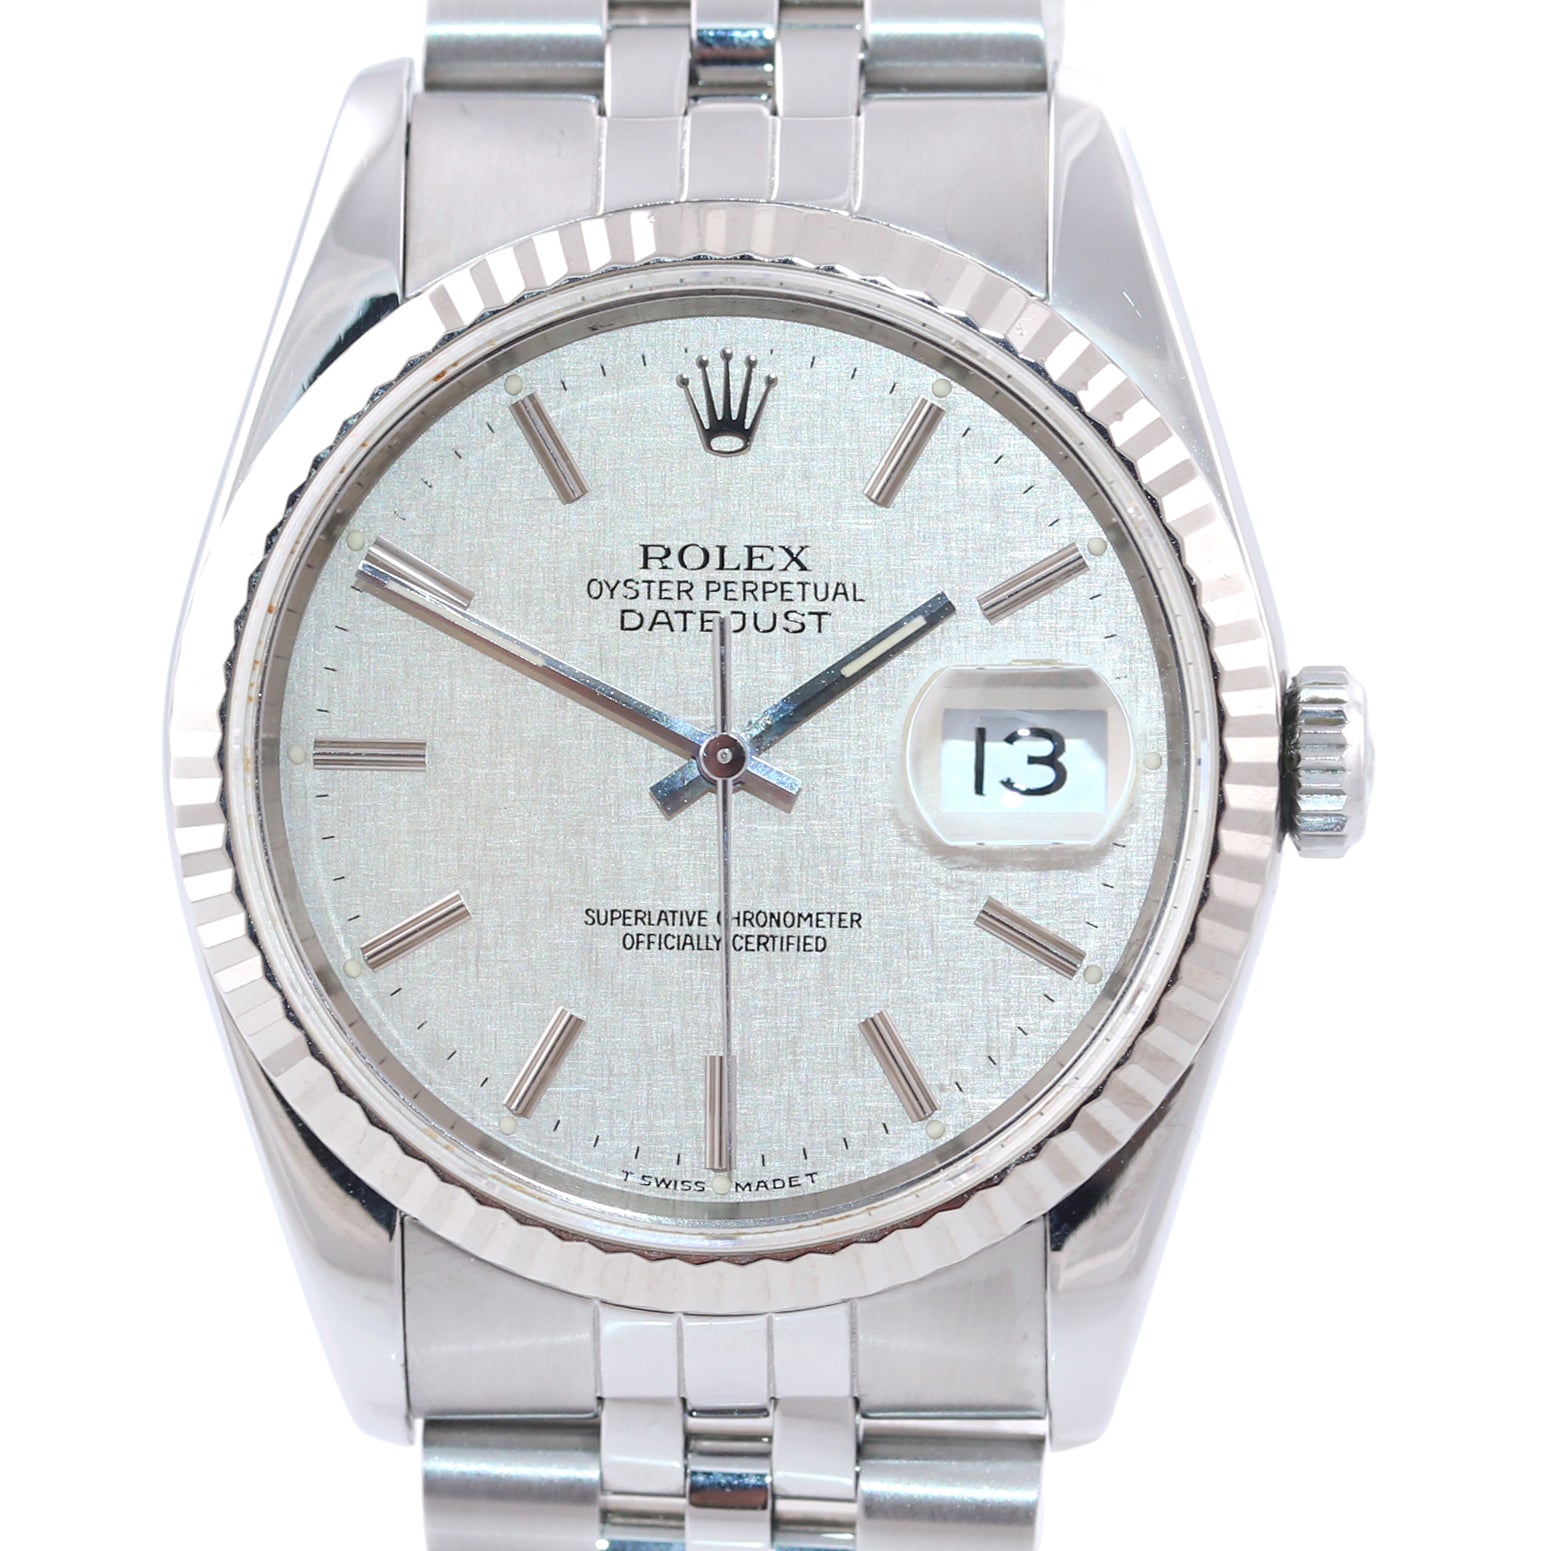 MINT Rolex DateJust 36mm 16234 Steel Silver Linen Jubilee 18k Fluted Bezel Watch